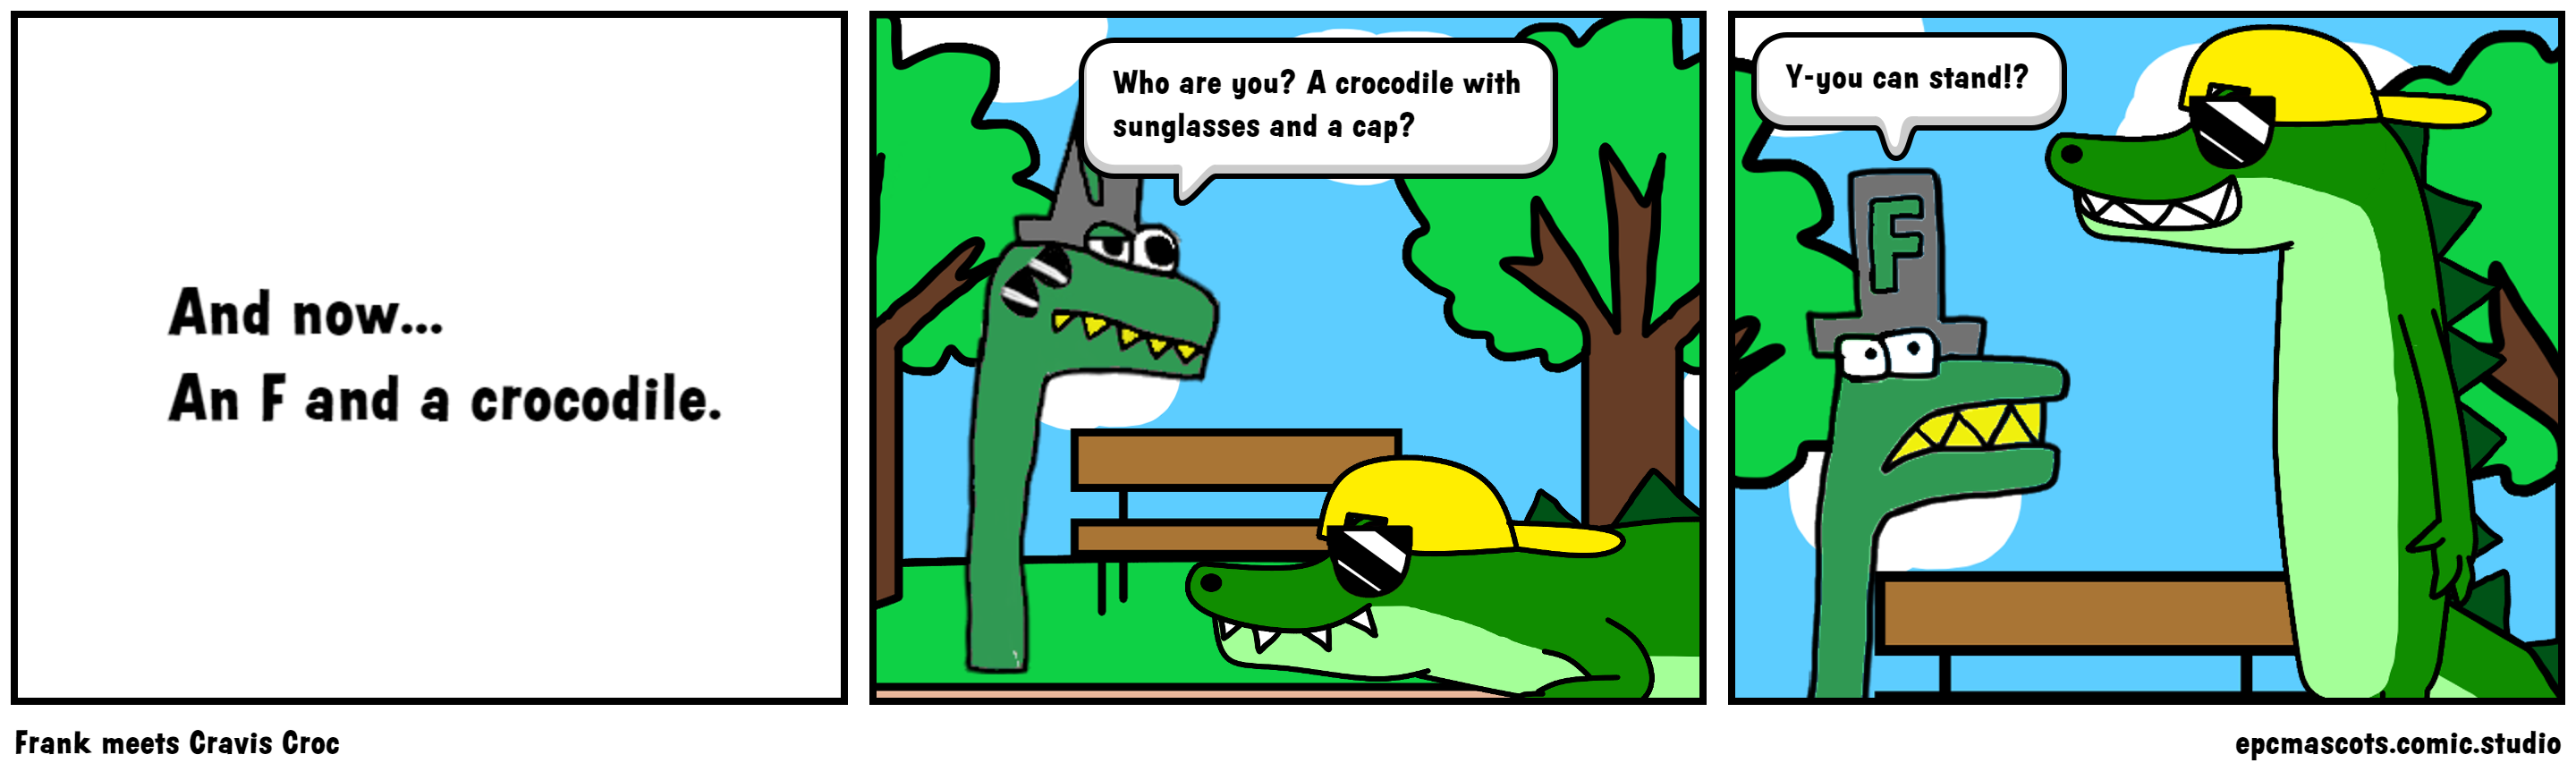 Frank meets Cravis Croc